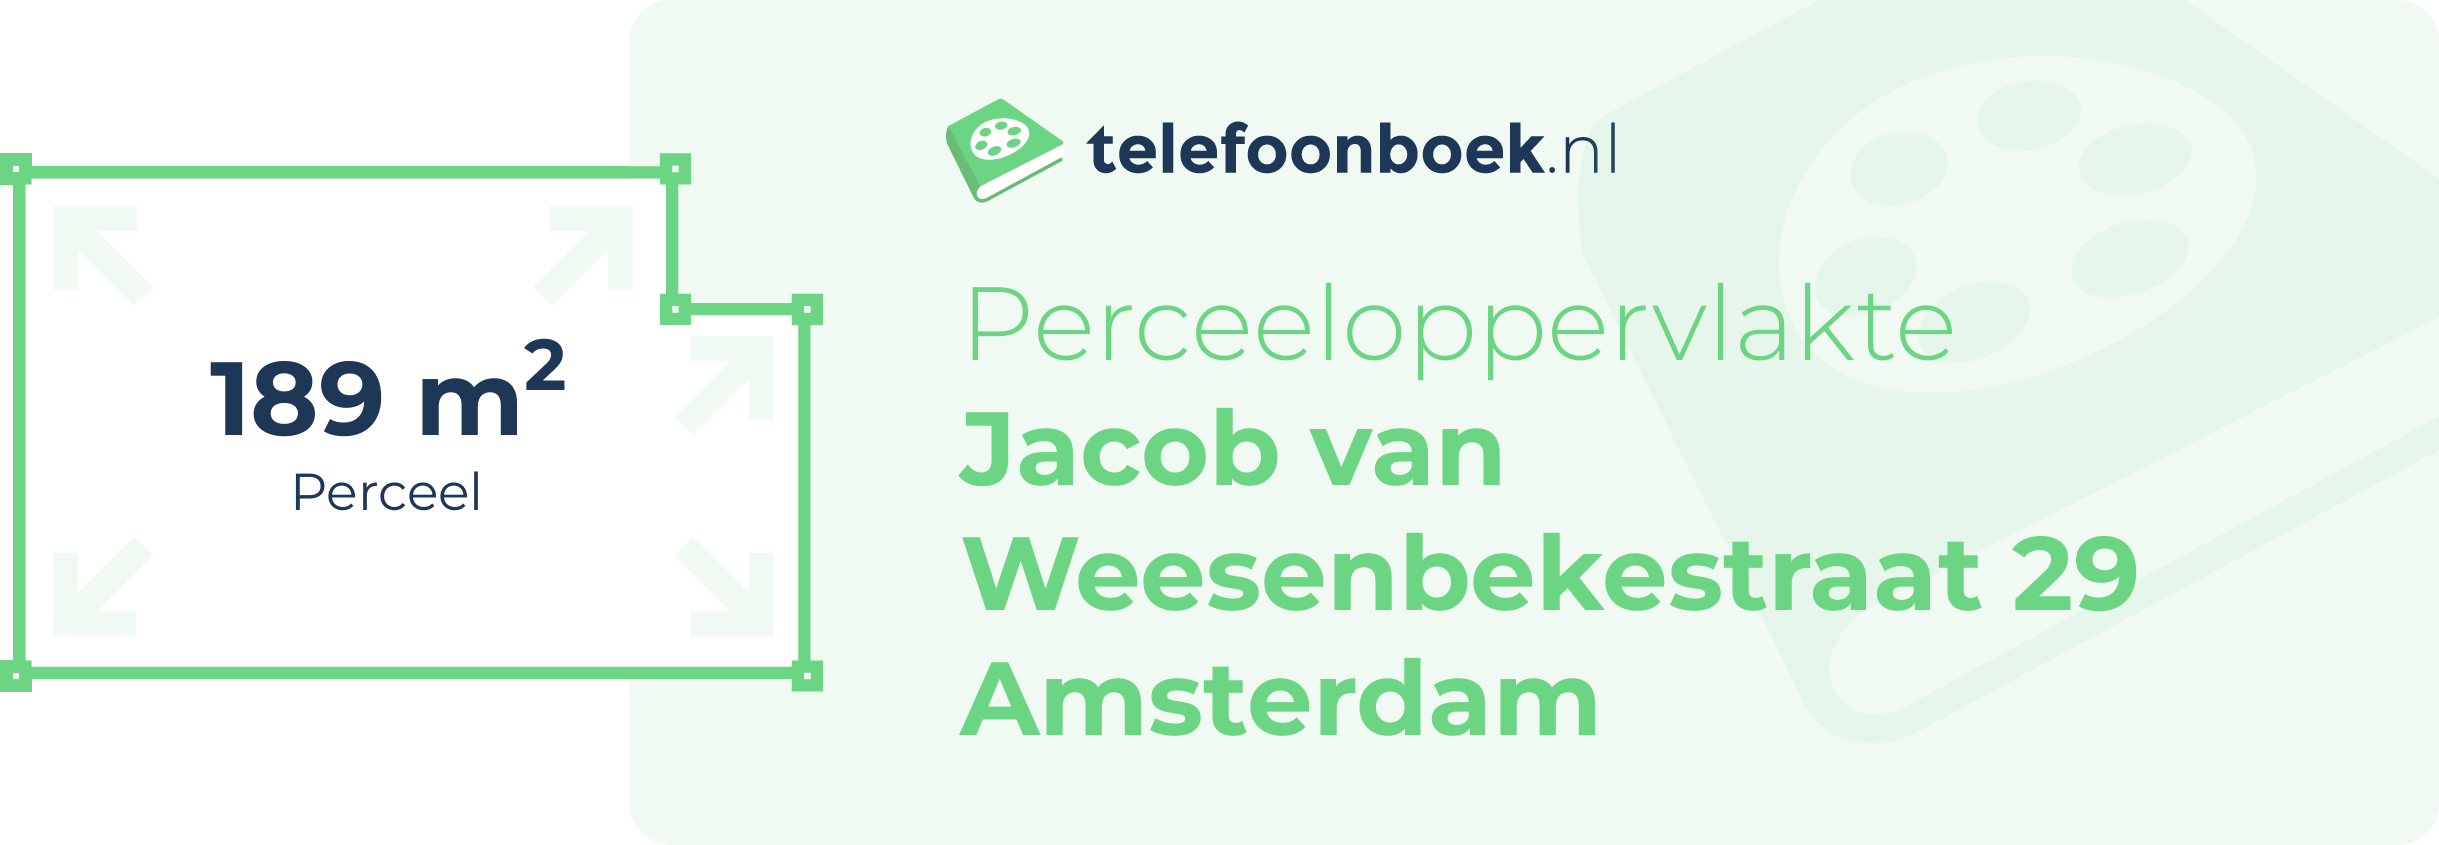 Perceeloppervlakte Jacob Van Weesenbekestraat 29 Amsterdam